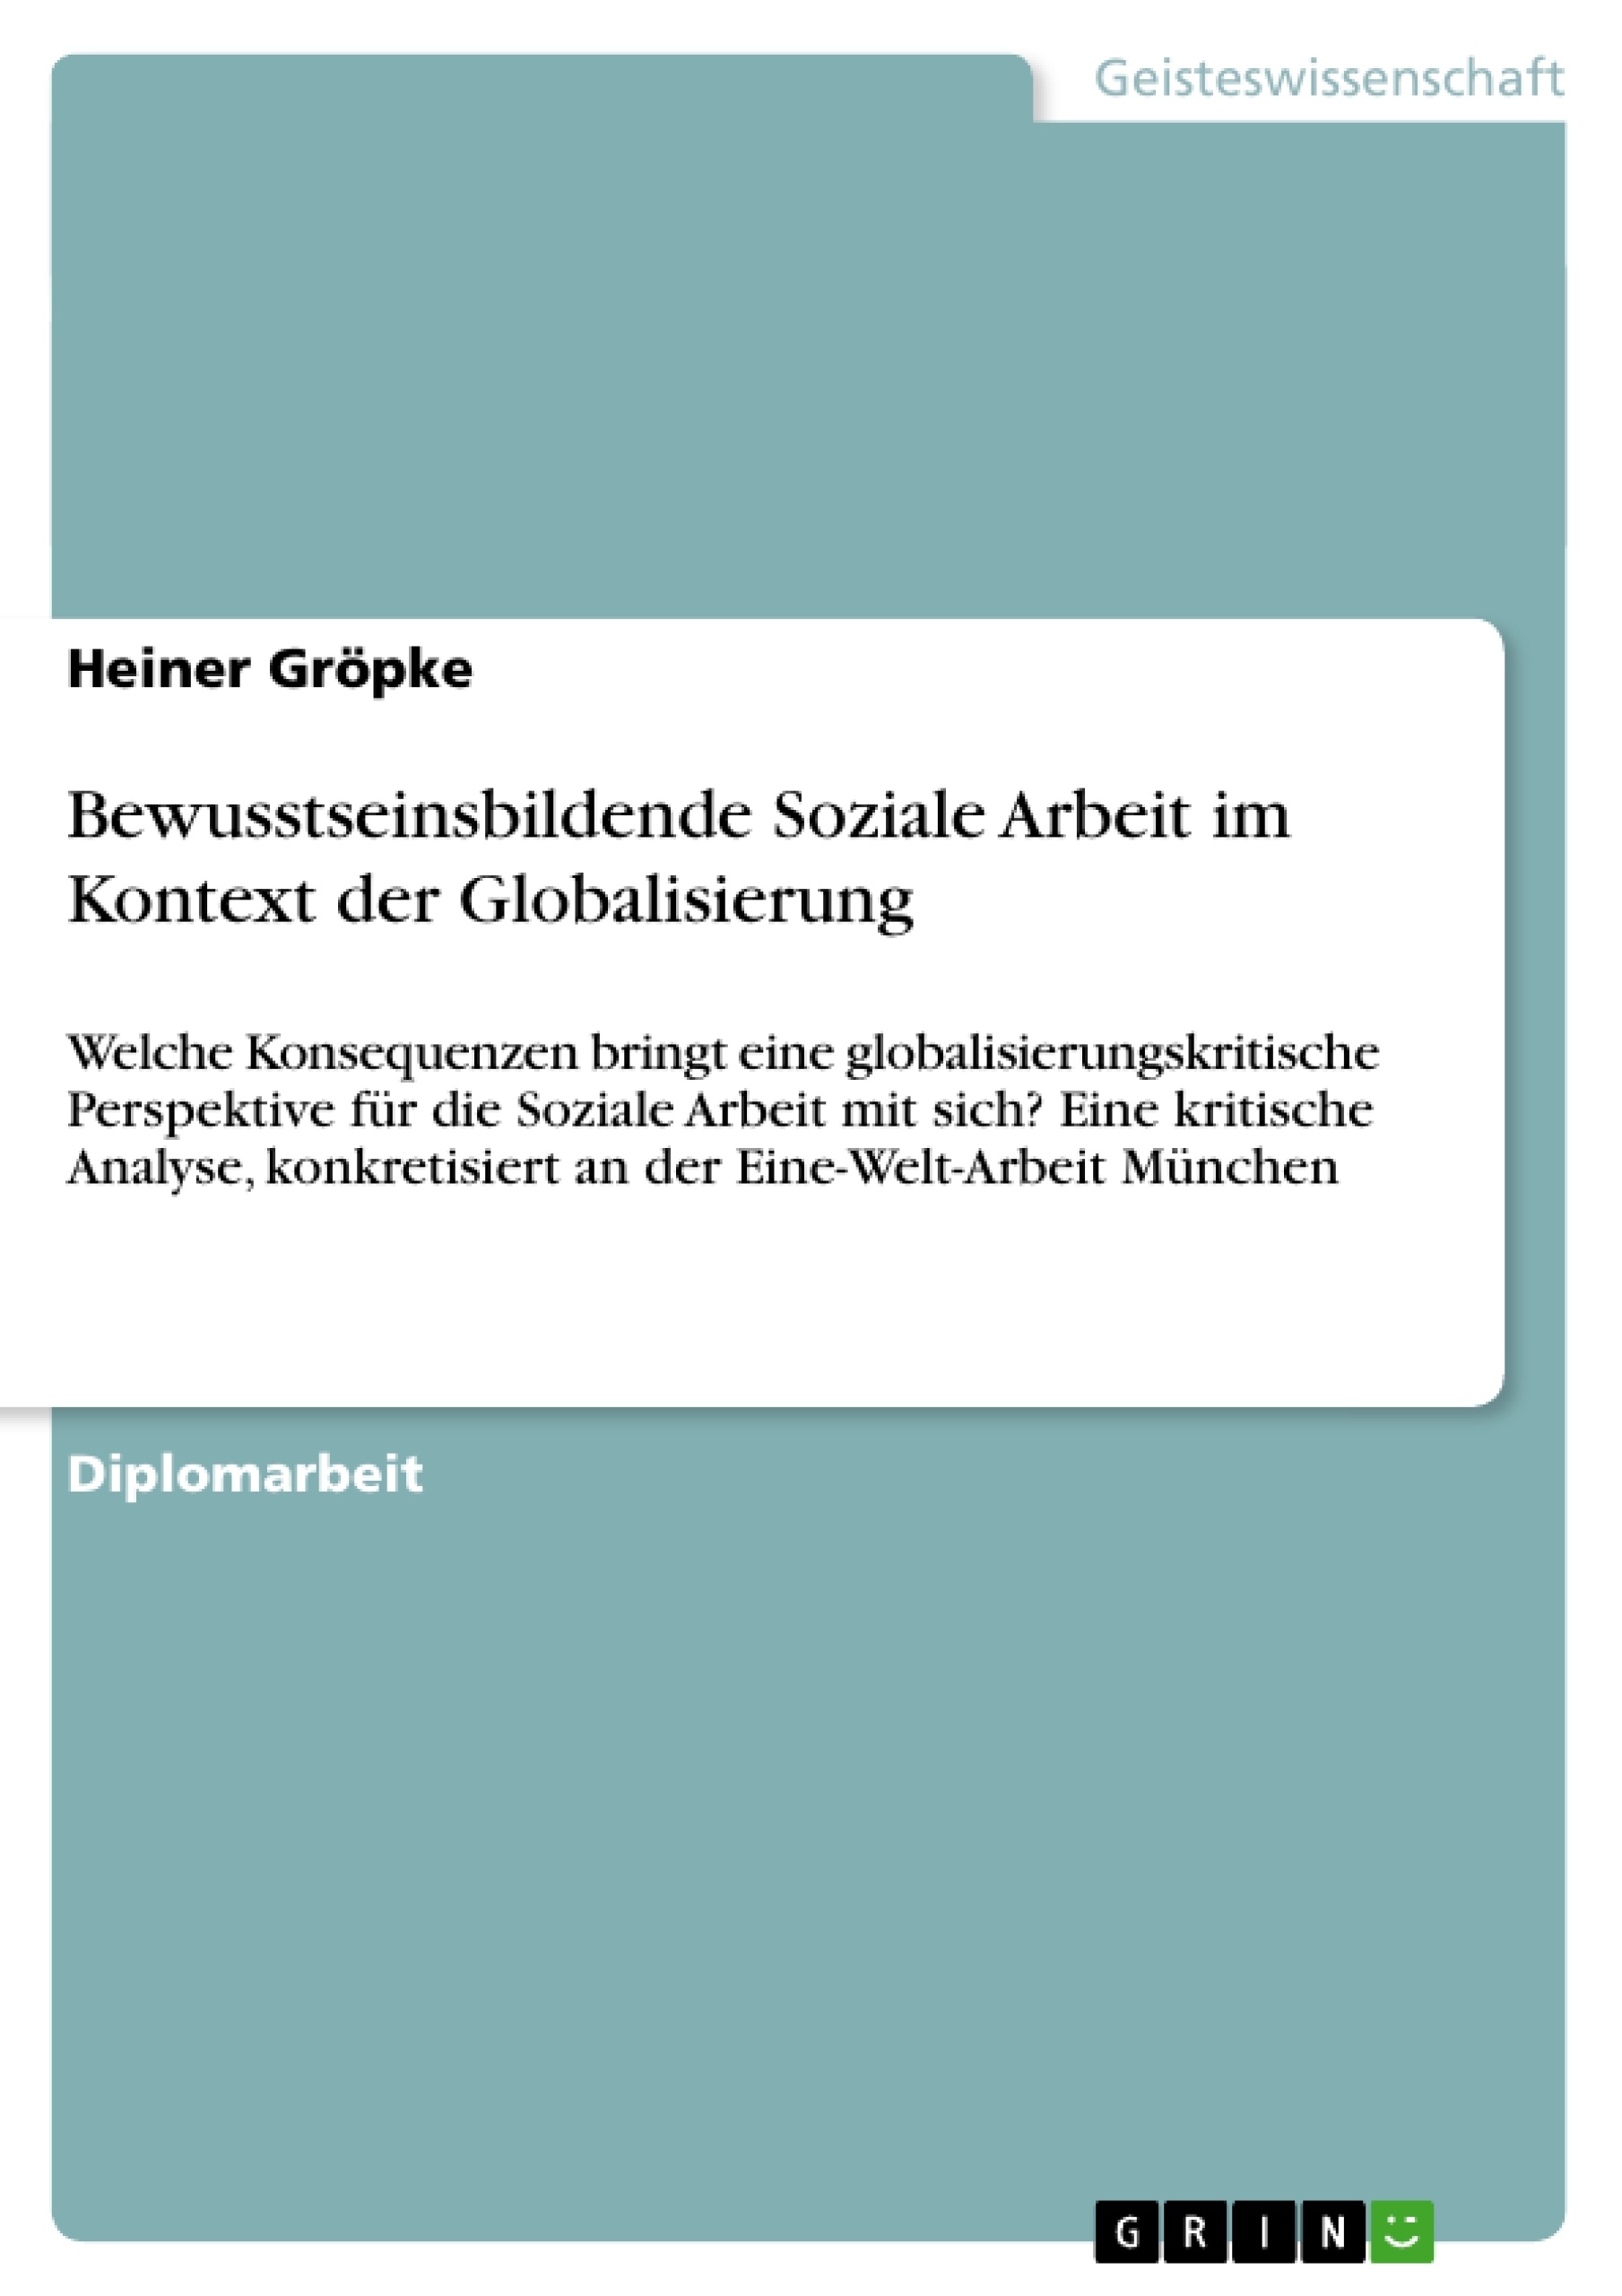 Title: Bewusstseinsbildende Soziale Arbeit im Kontext der Globalisierung